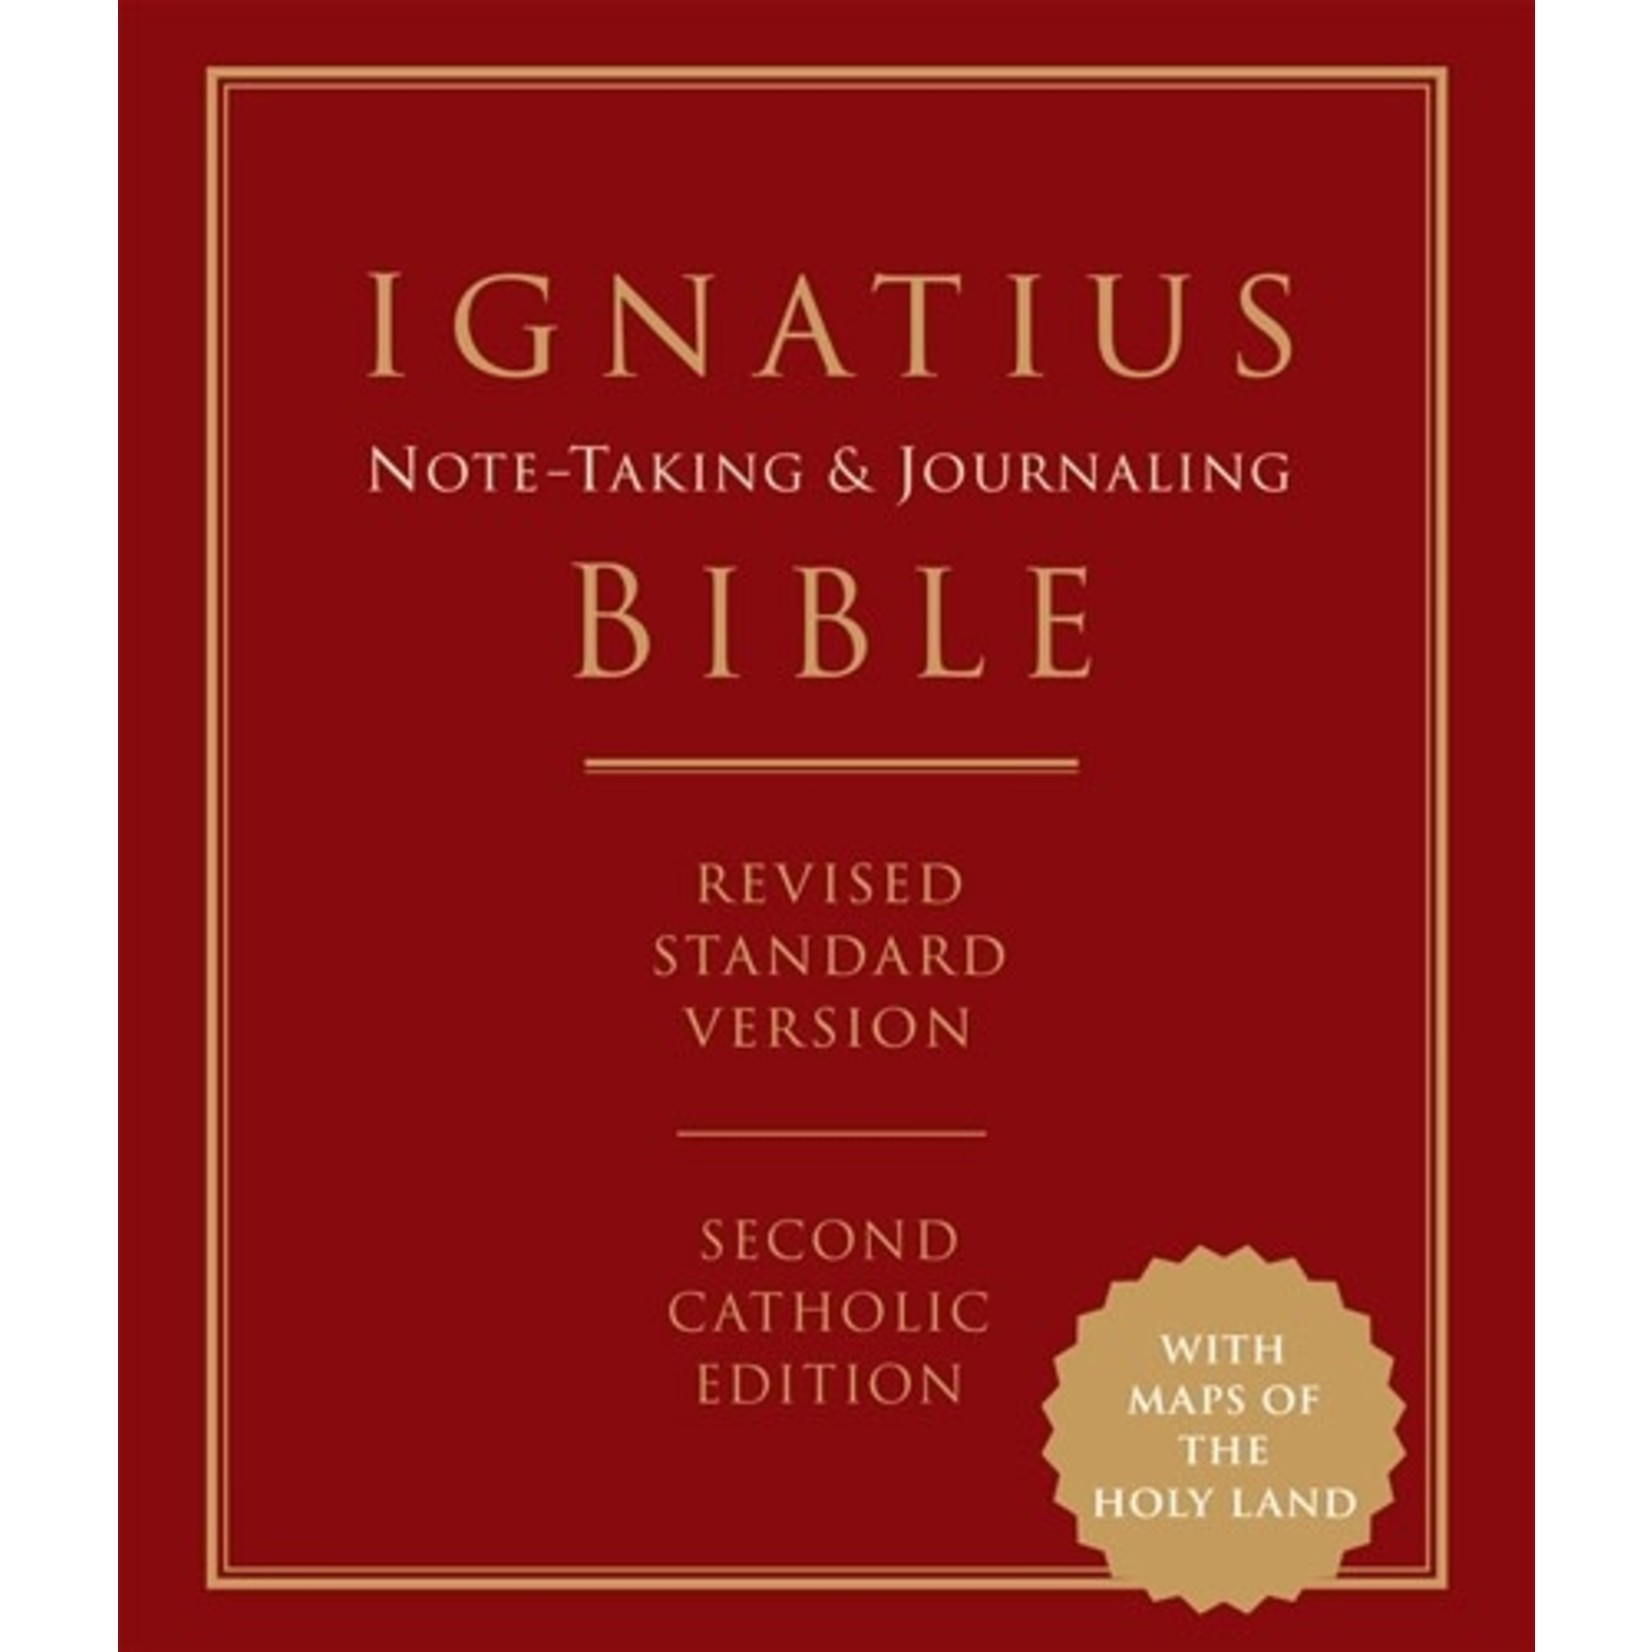 Ignatius Note-Taking & Journaling Bible RSV